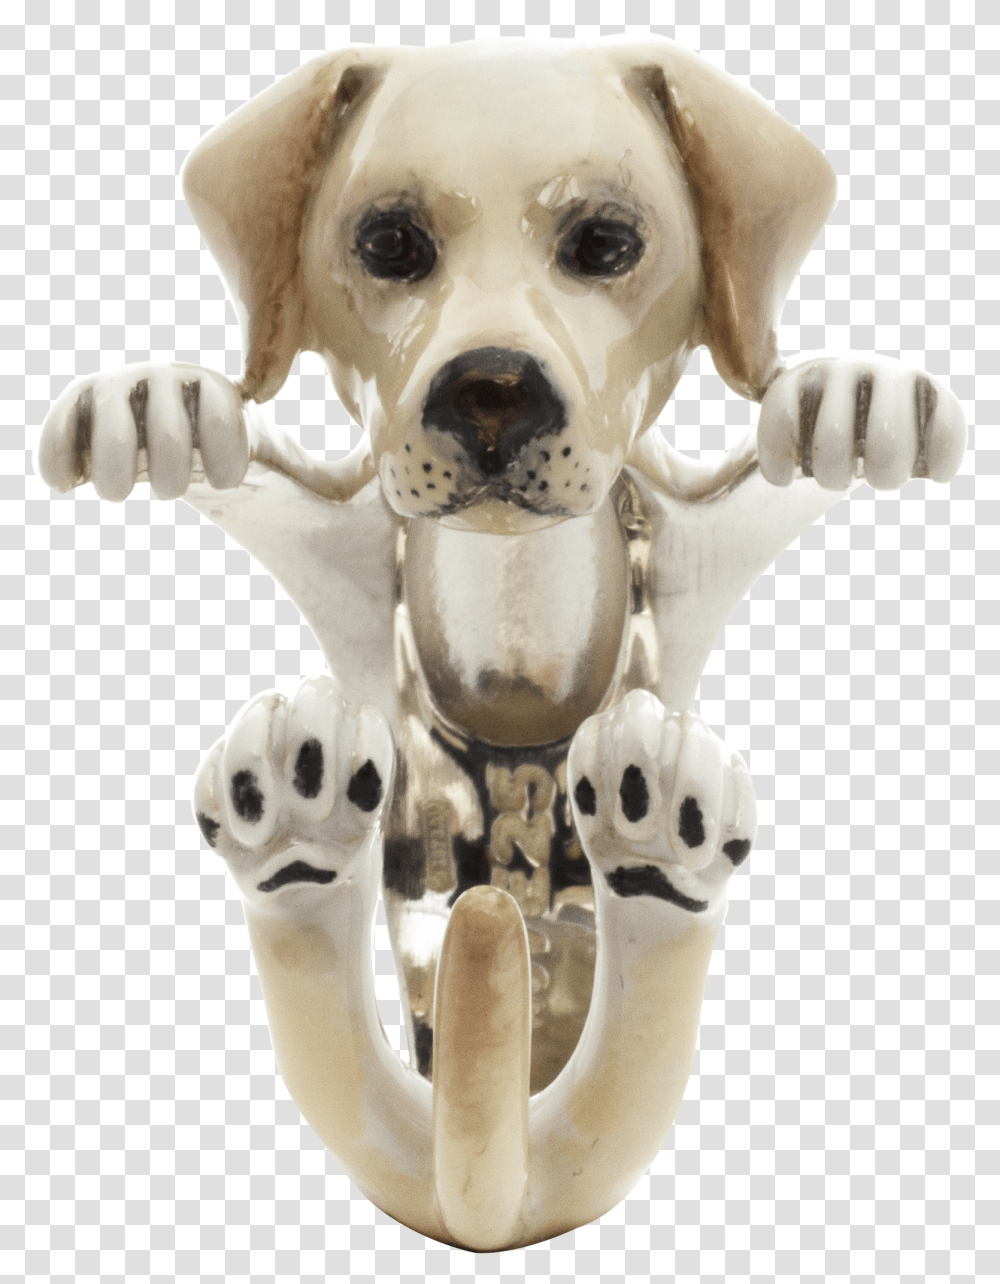 Labrador Dog Fever Anello Labrador, Pet, Canine, Animal, Mammal Transparent Png